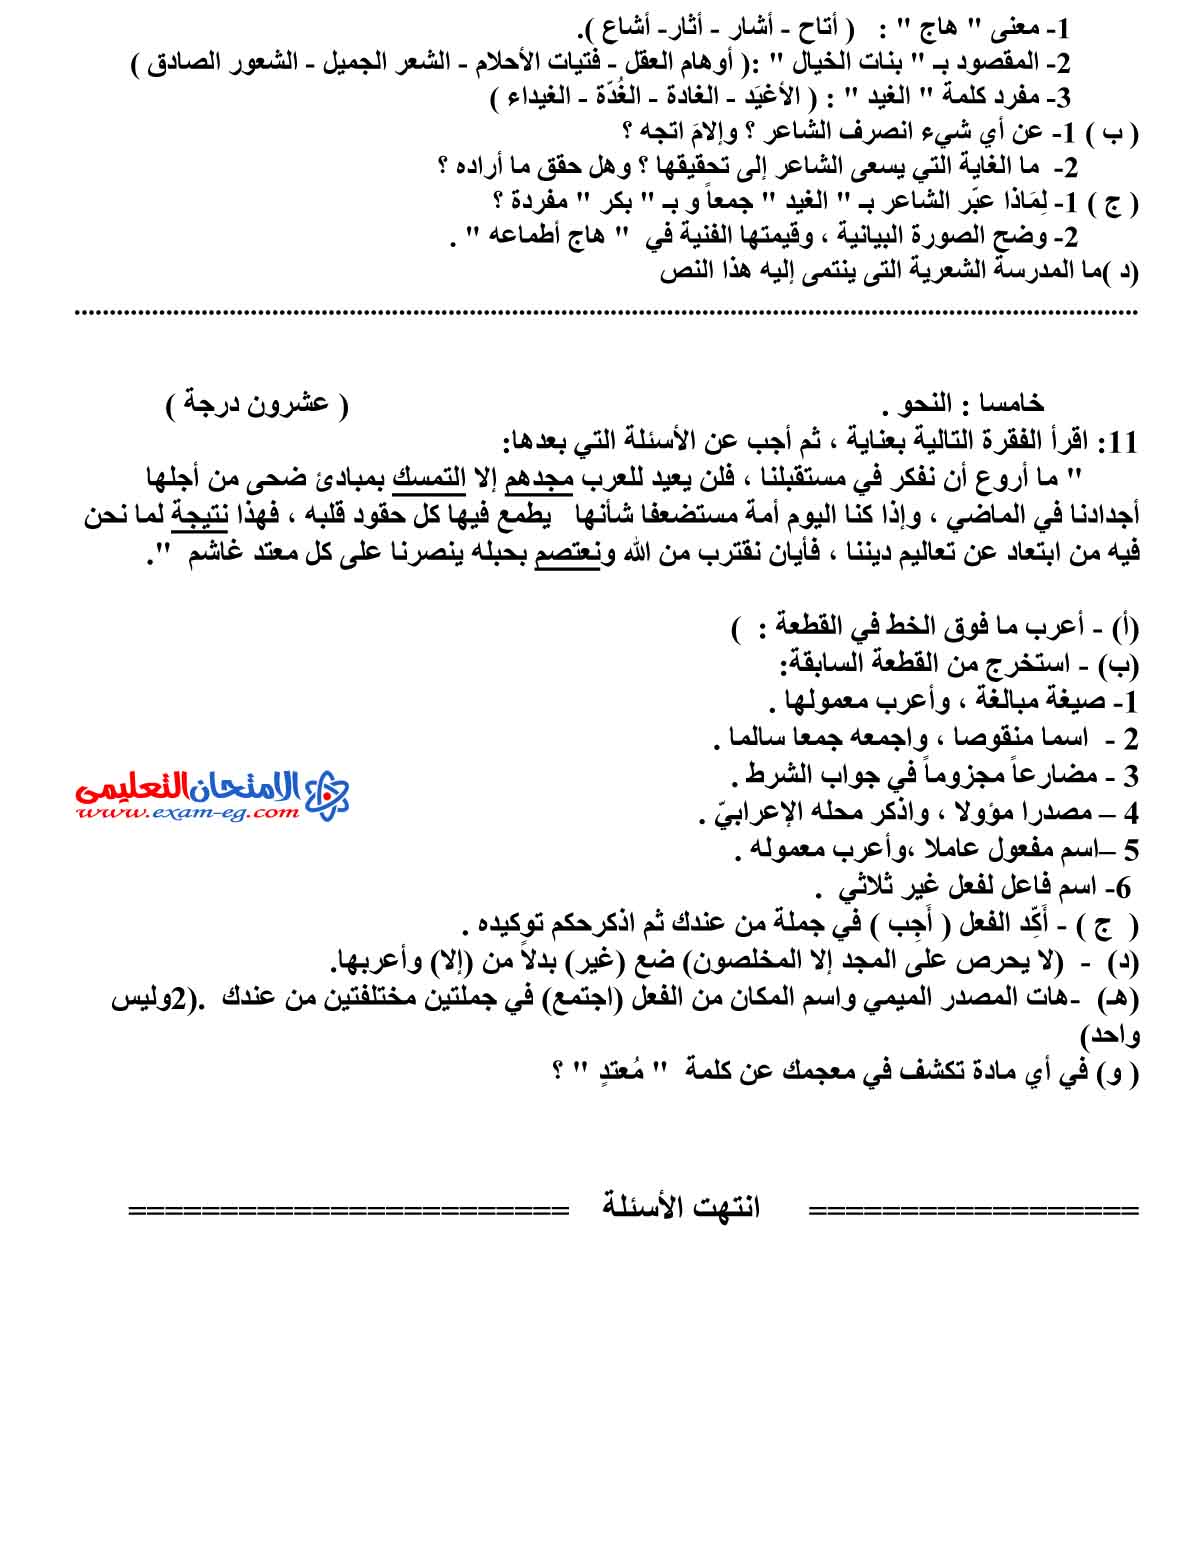 امتحان اللغة العربية 1 - مدرسة اون لاين (4)